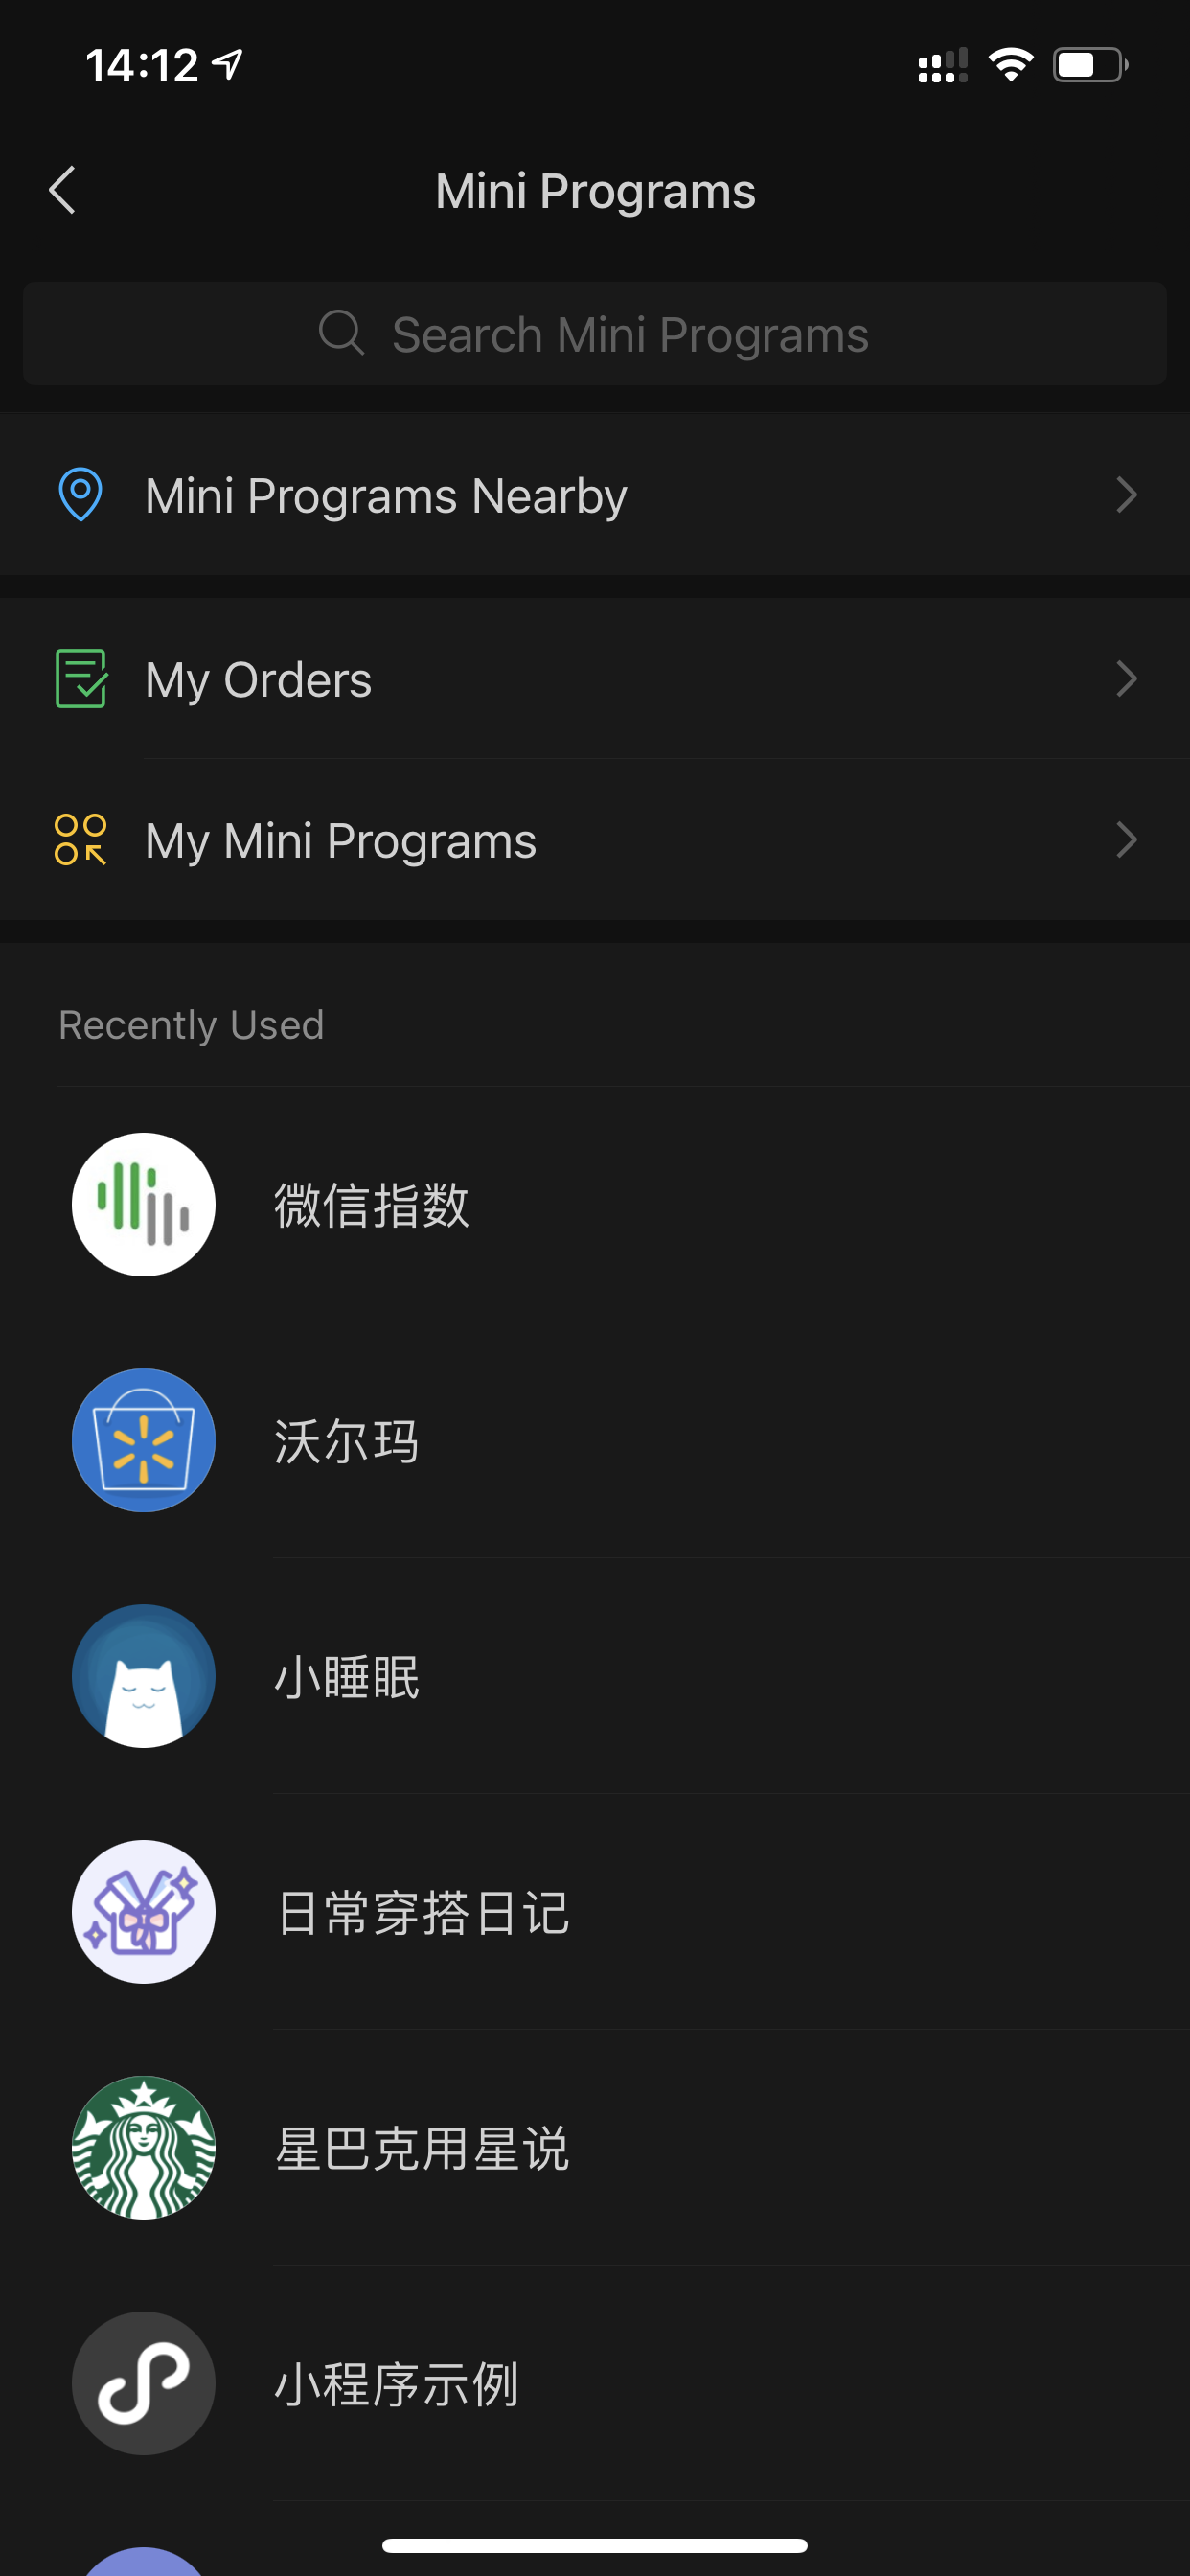 Danh sách các ứng dụng nhỏ mới phát hành gần đây trong siêu ứng dụng WeChat.